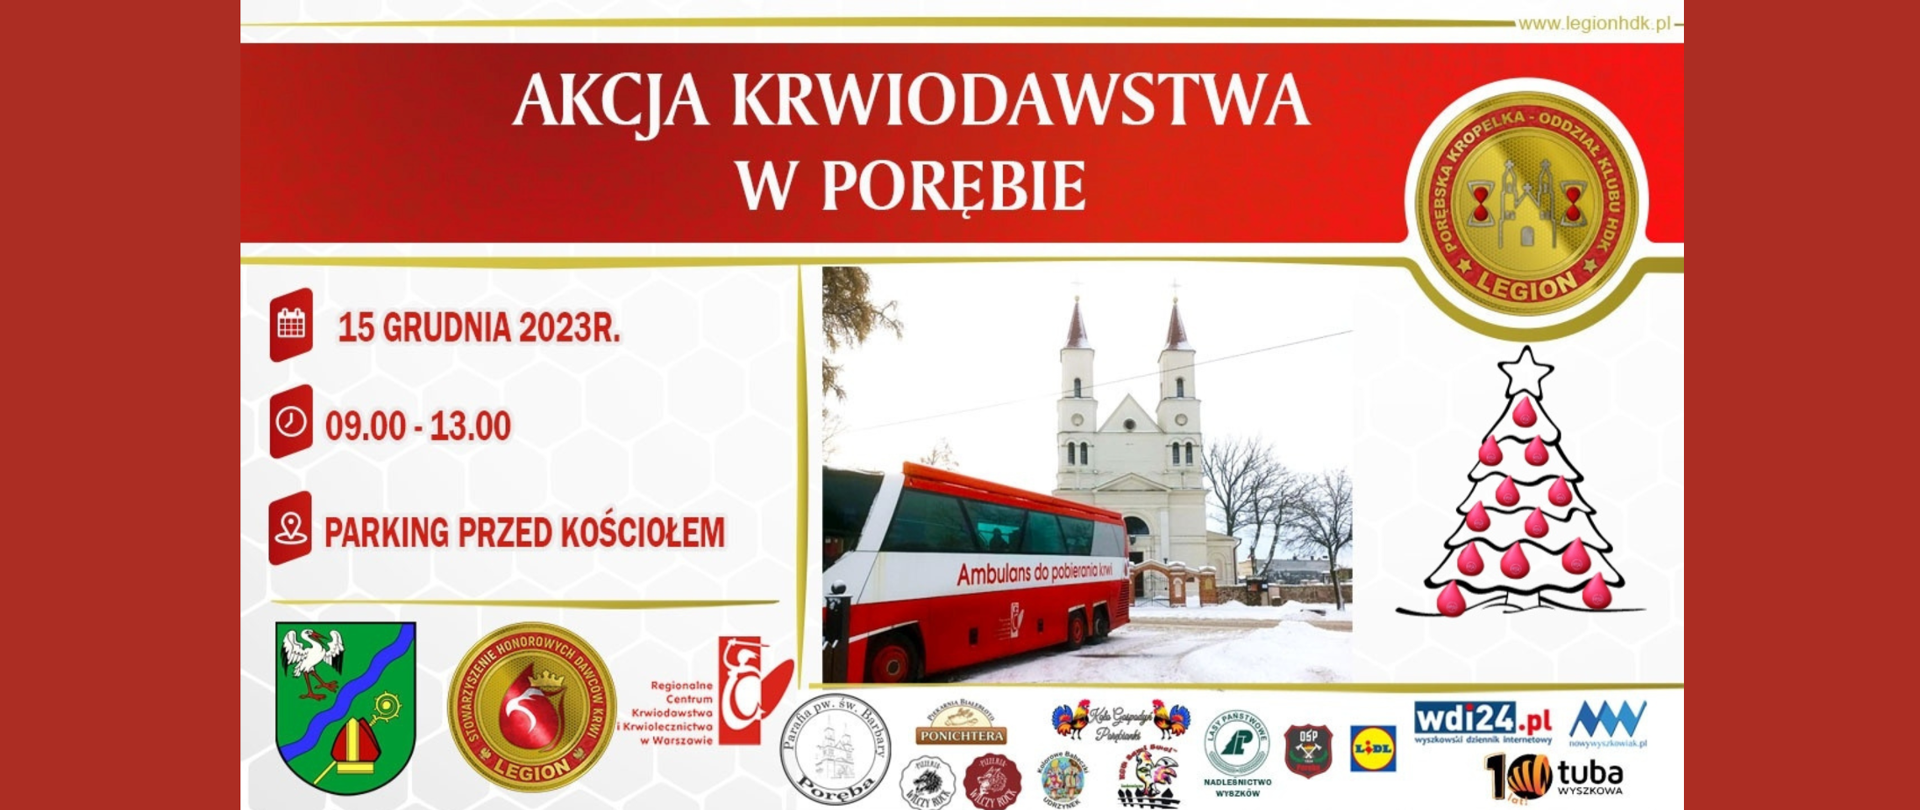 Baner zapraszający na akcję krwiodawstwa w Porębie, zdjęcie ambulansu do pobierania krwi i kościoła w tle, data 15 grudnia 2023 r. 09.00-13.00 parking przed kościołem. Poniżej logotypy organizatorów i sponsorów.